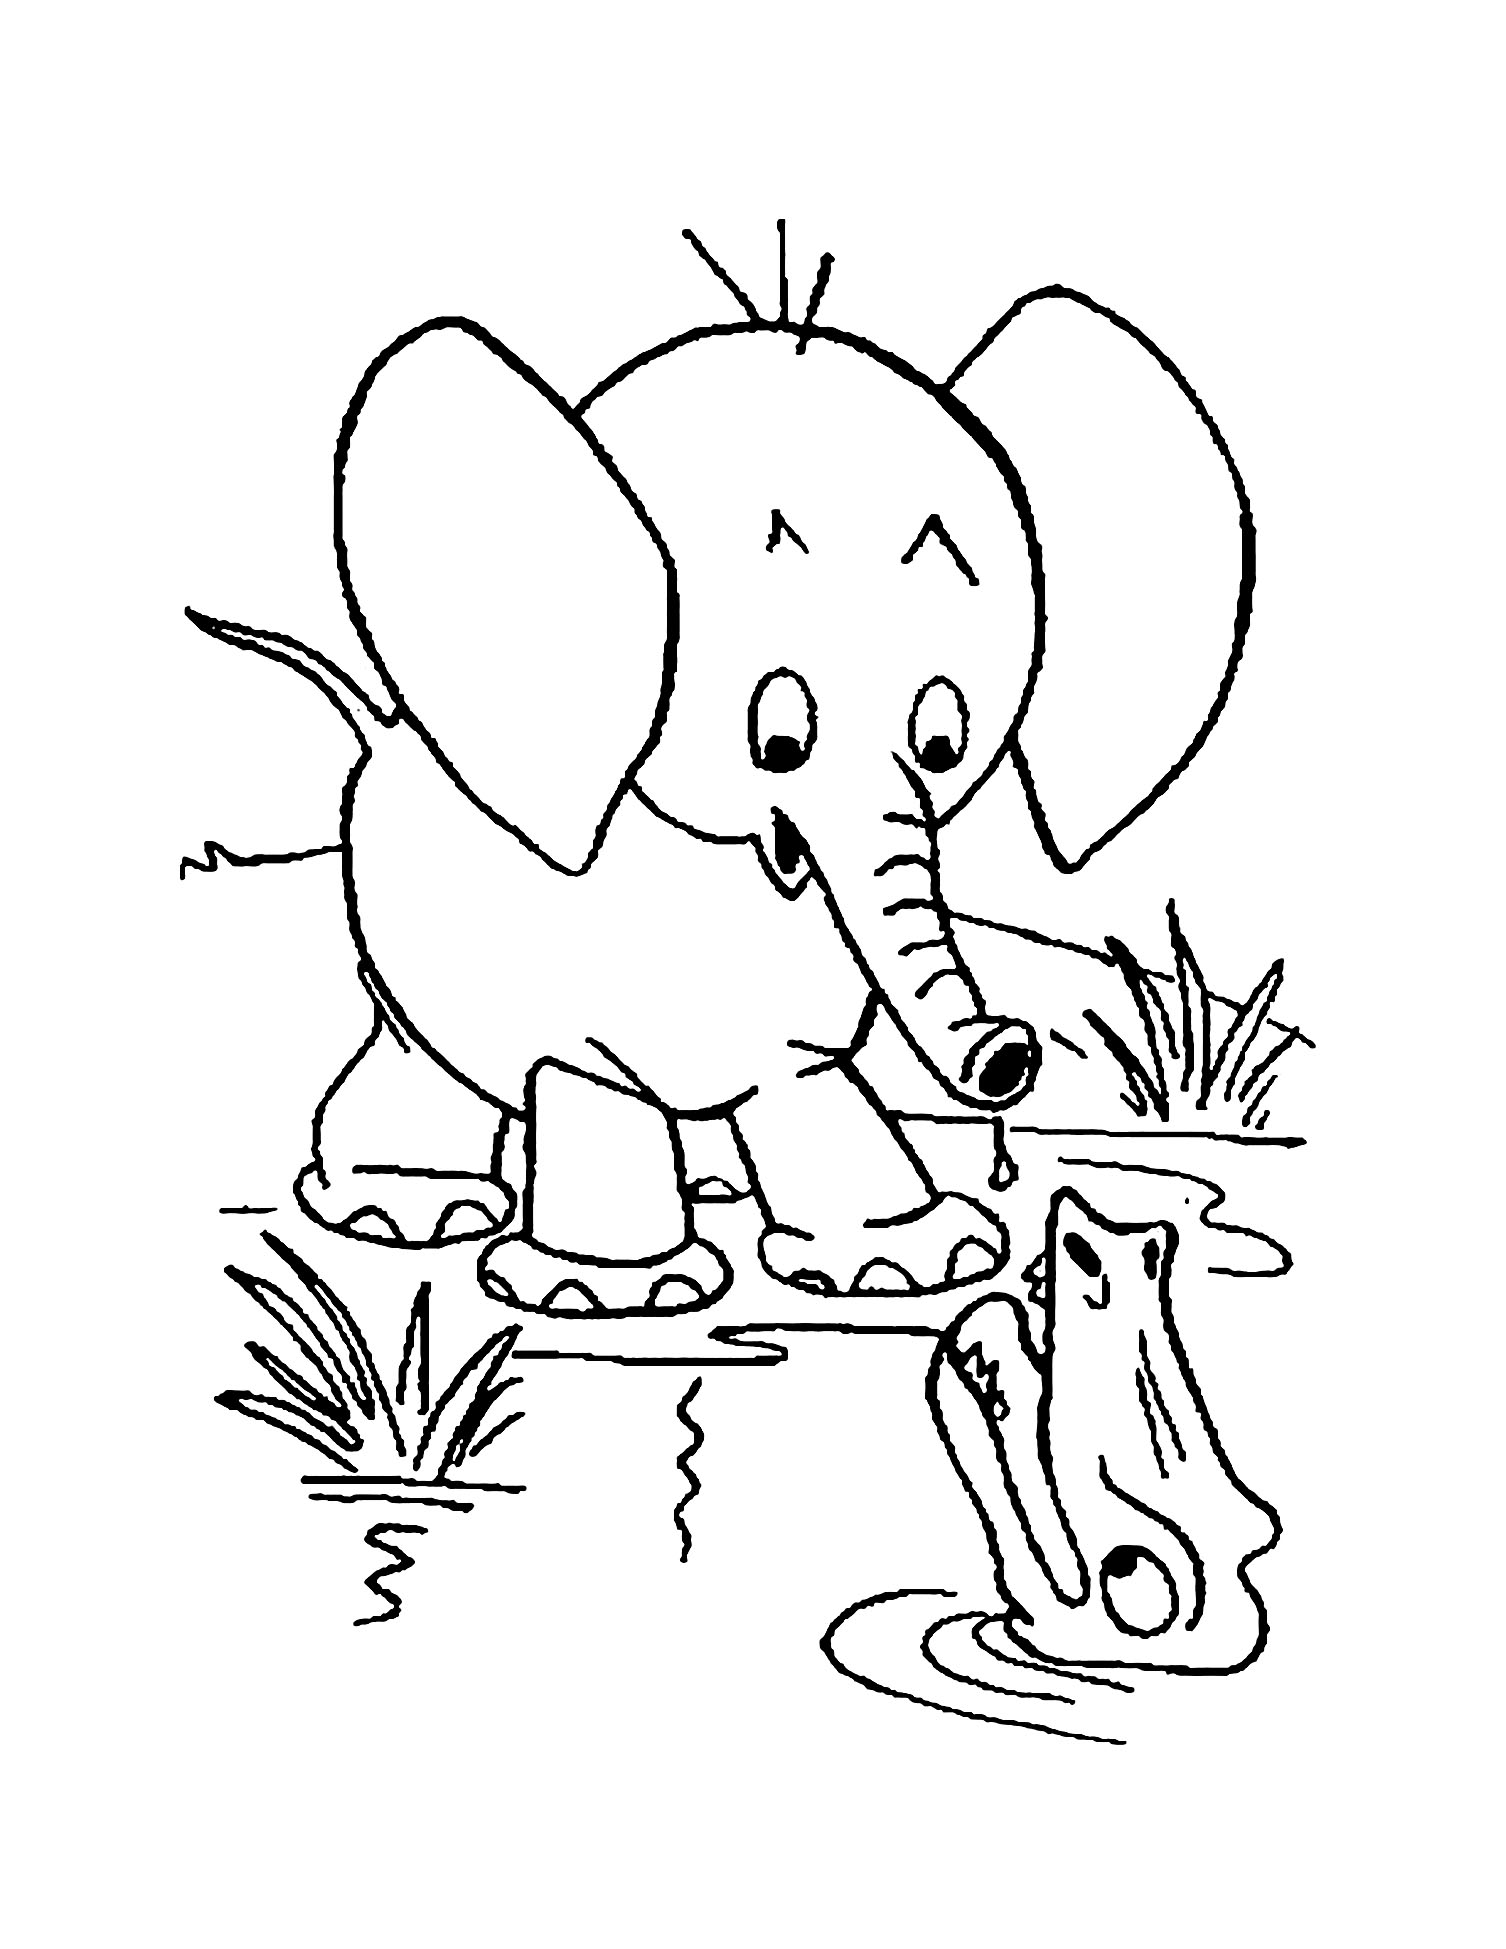 Coloração fácil de elefantes para crianças